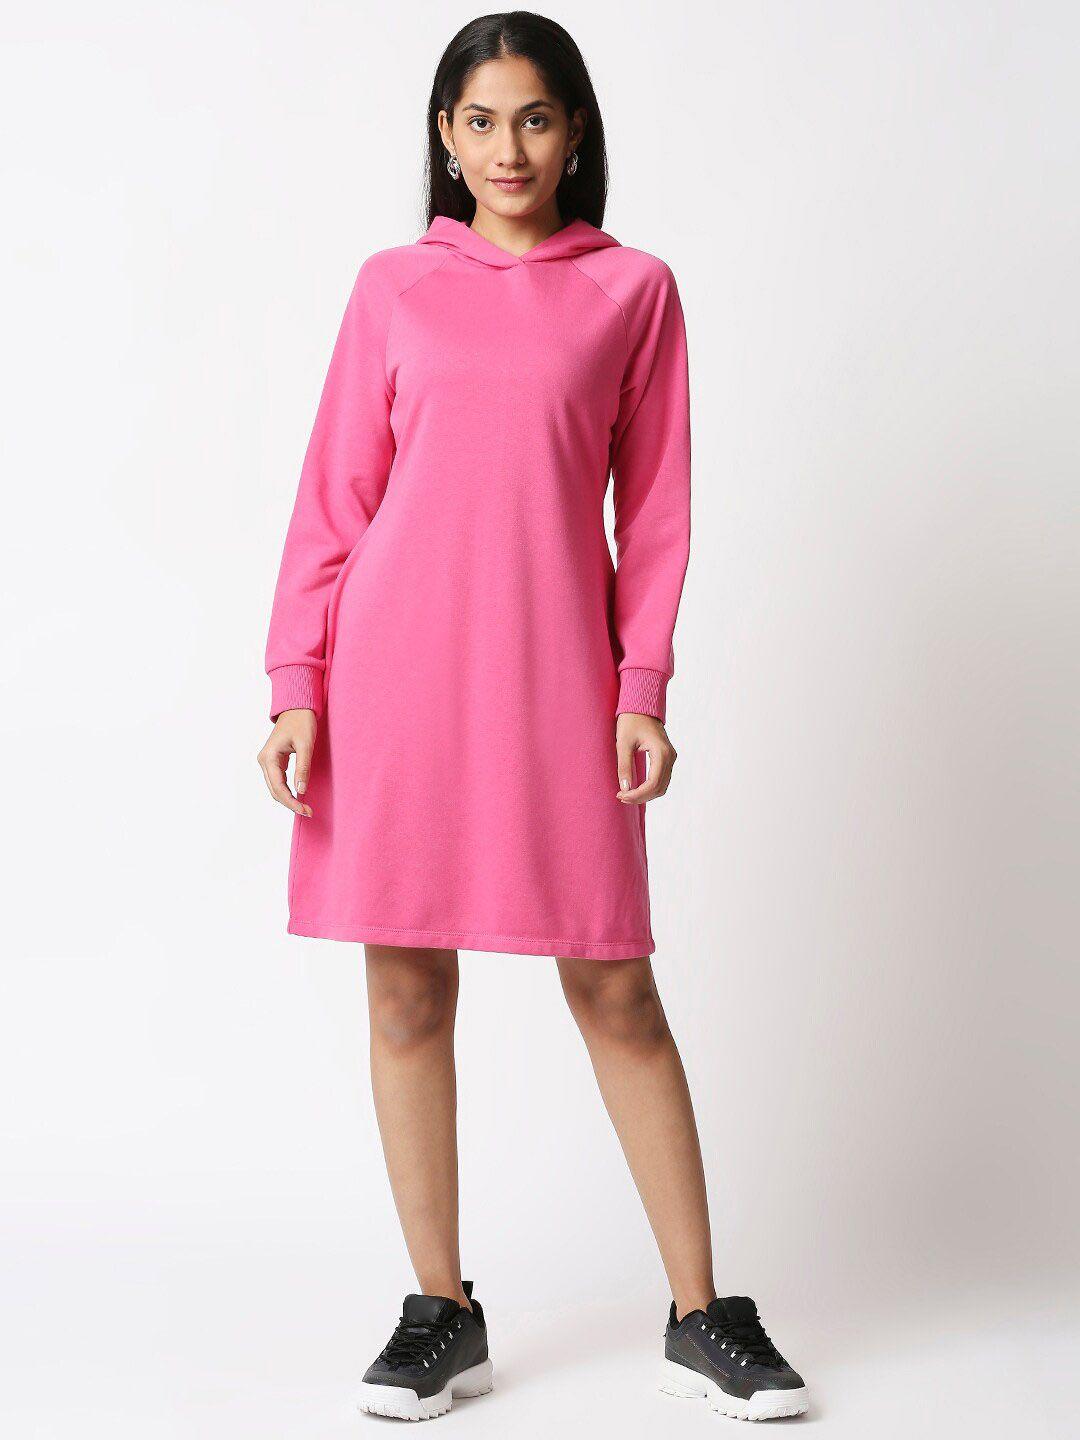 20dresses pink hooded jumper dress